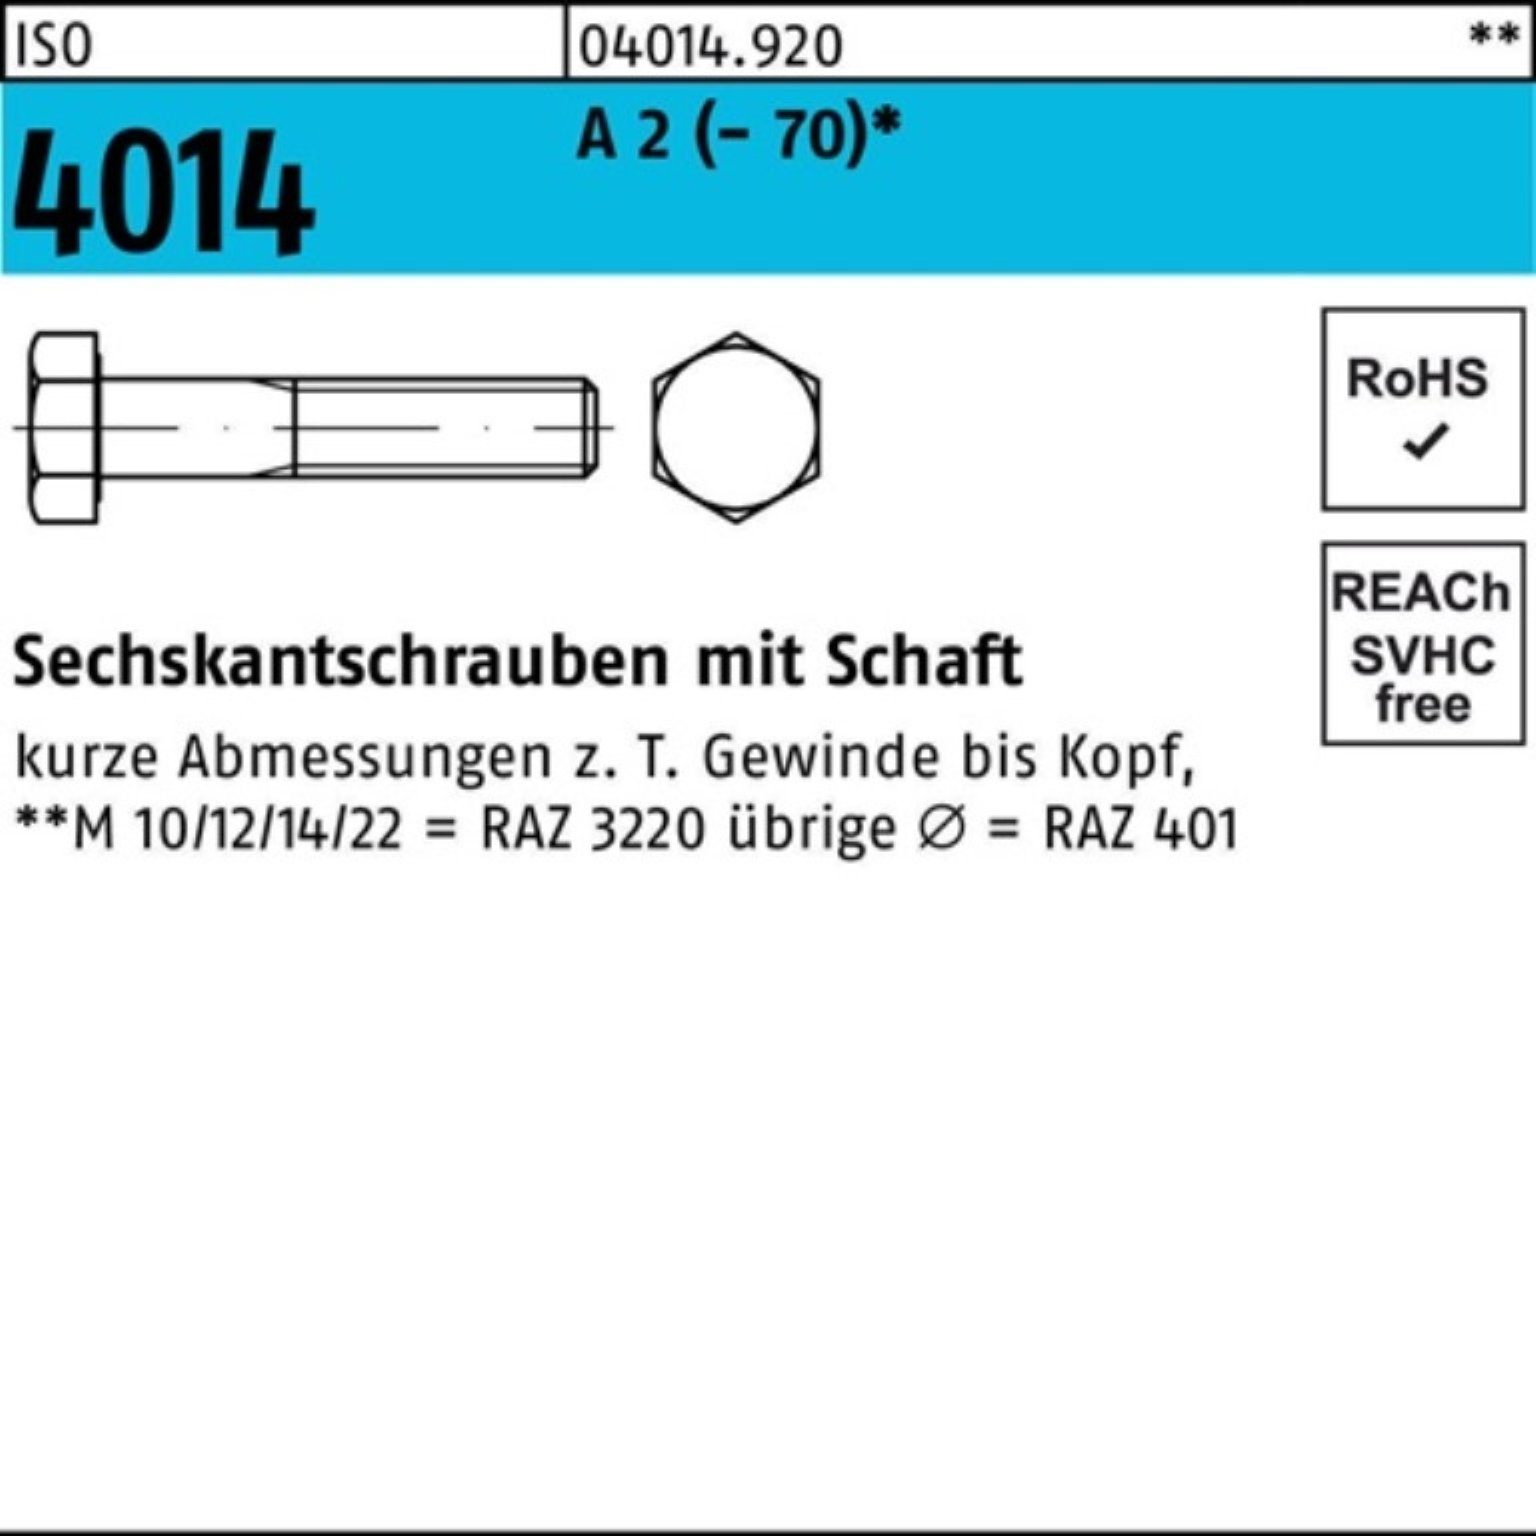 Bufab Sechskantschraube 100er Pack Sechskantschraube ISO 4014 Schaft M16x 160 A 2 (70) 1 St